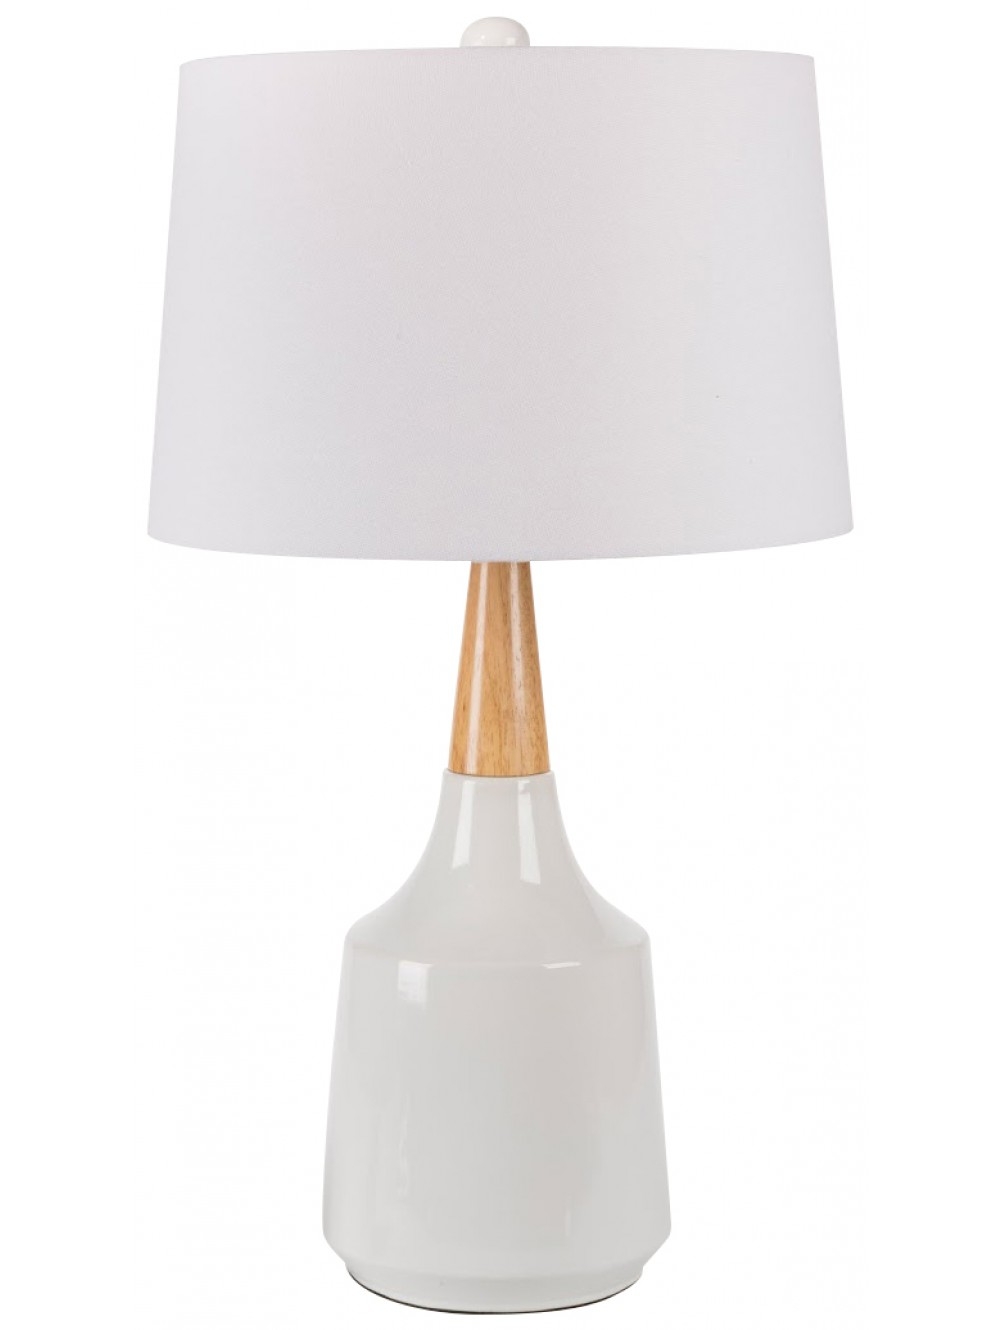 TAMAN LAMP, WHITE - Image 0